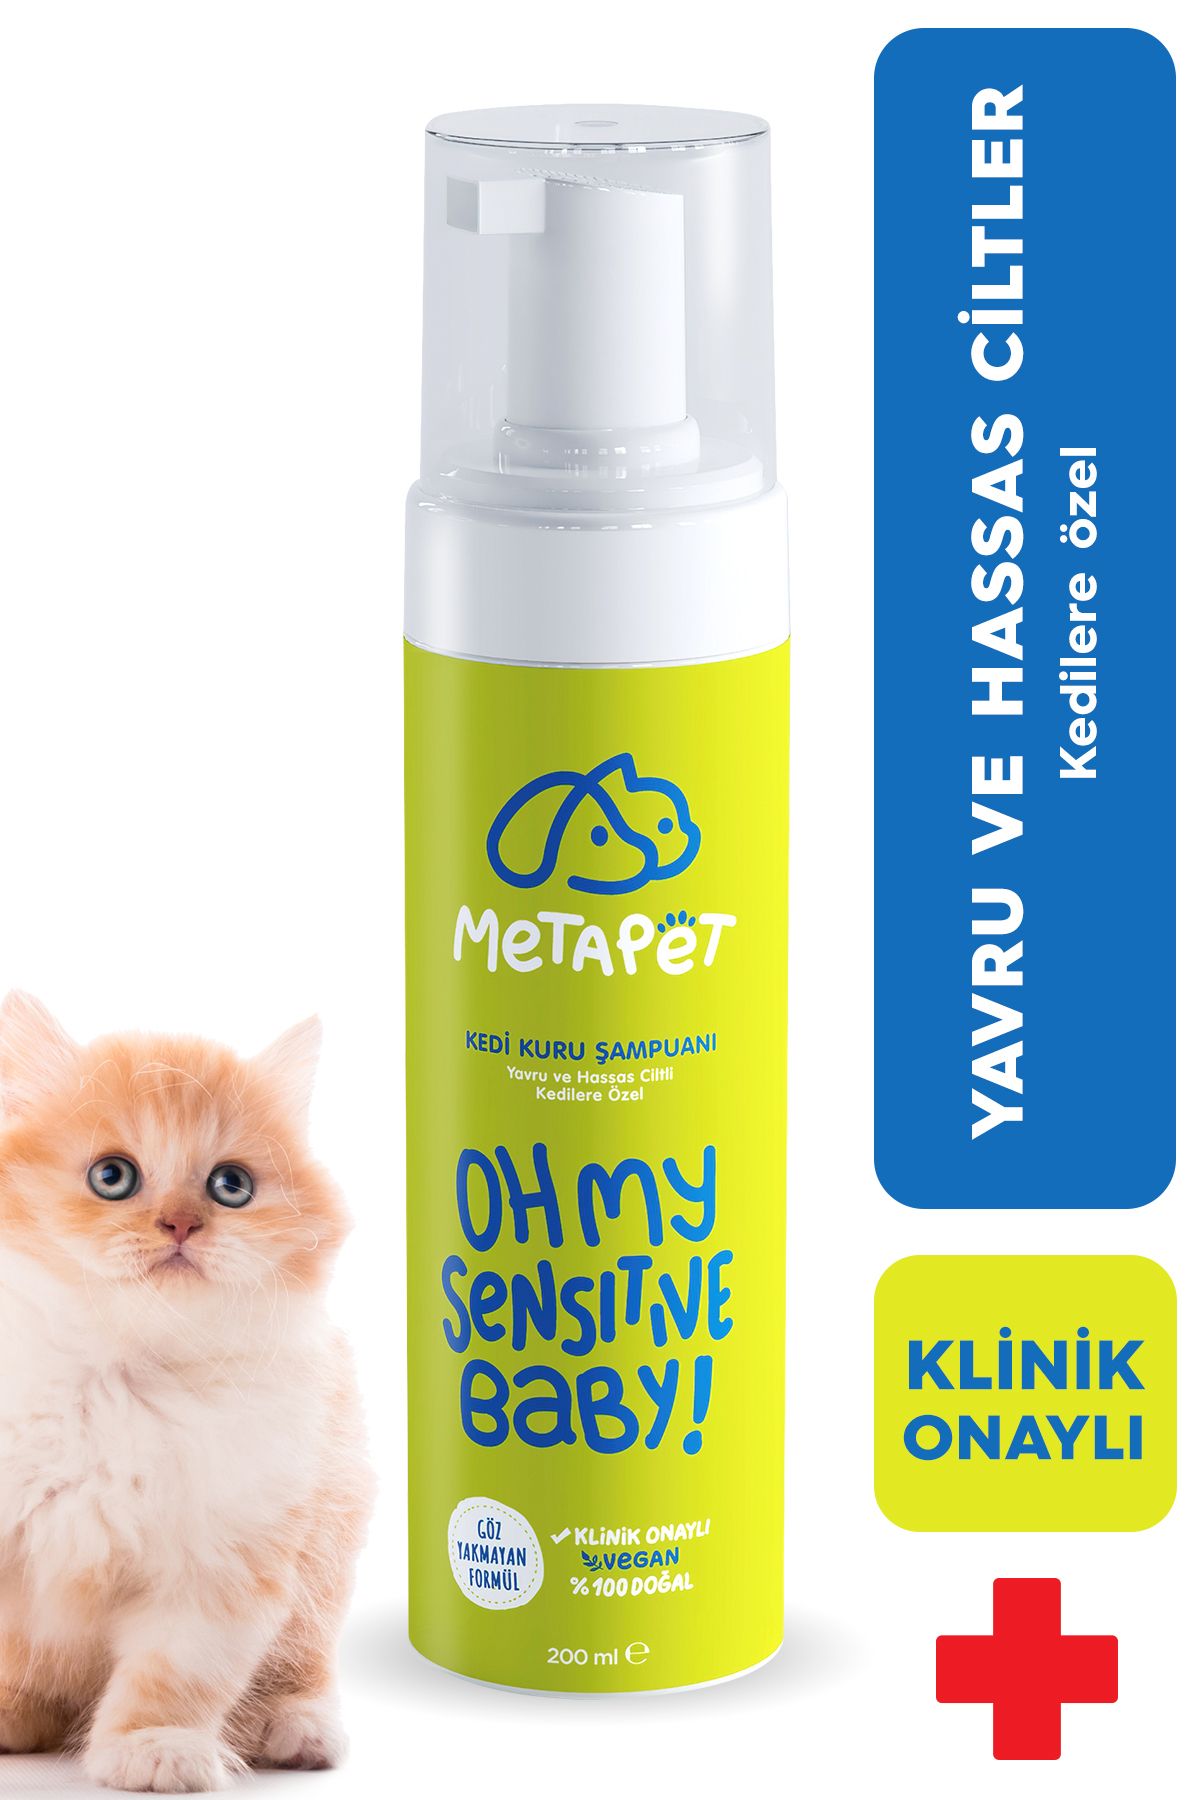 Metapet Hassas Ciltli Kediler Için Kuru Şampuan, Doğal Tüy Bakım Ürünü, Durulanmayan Susuz Köpük Yıkama